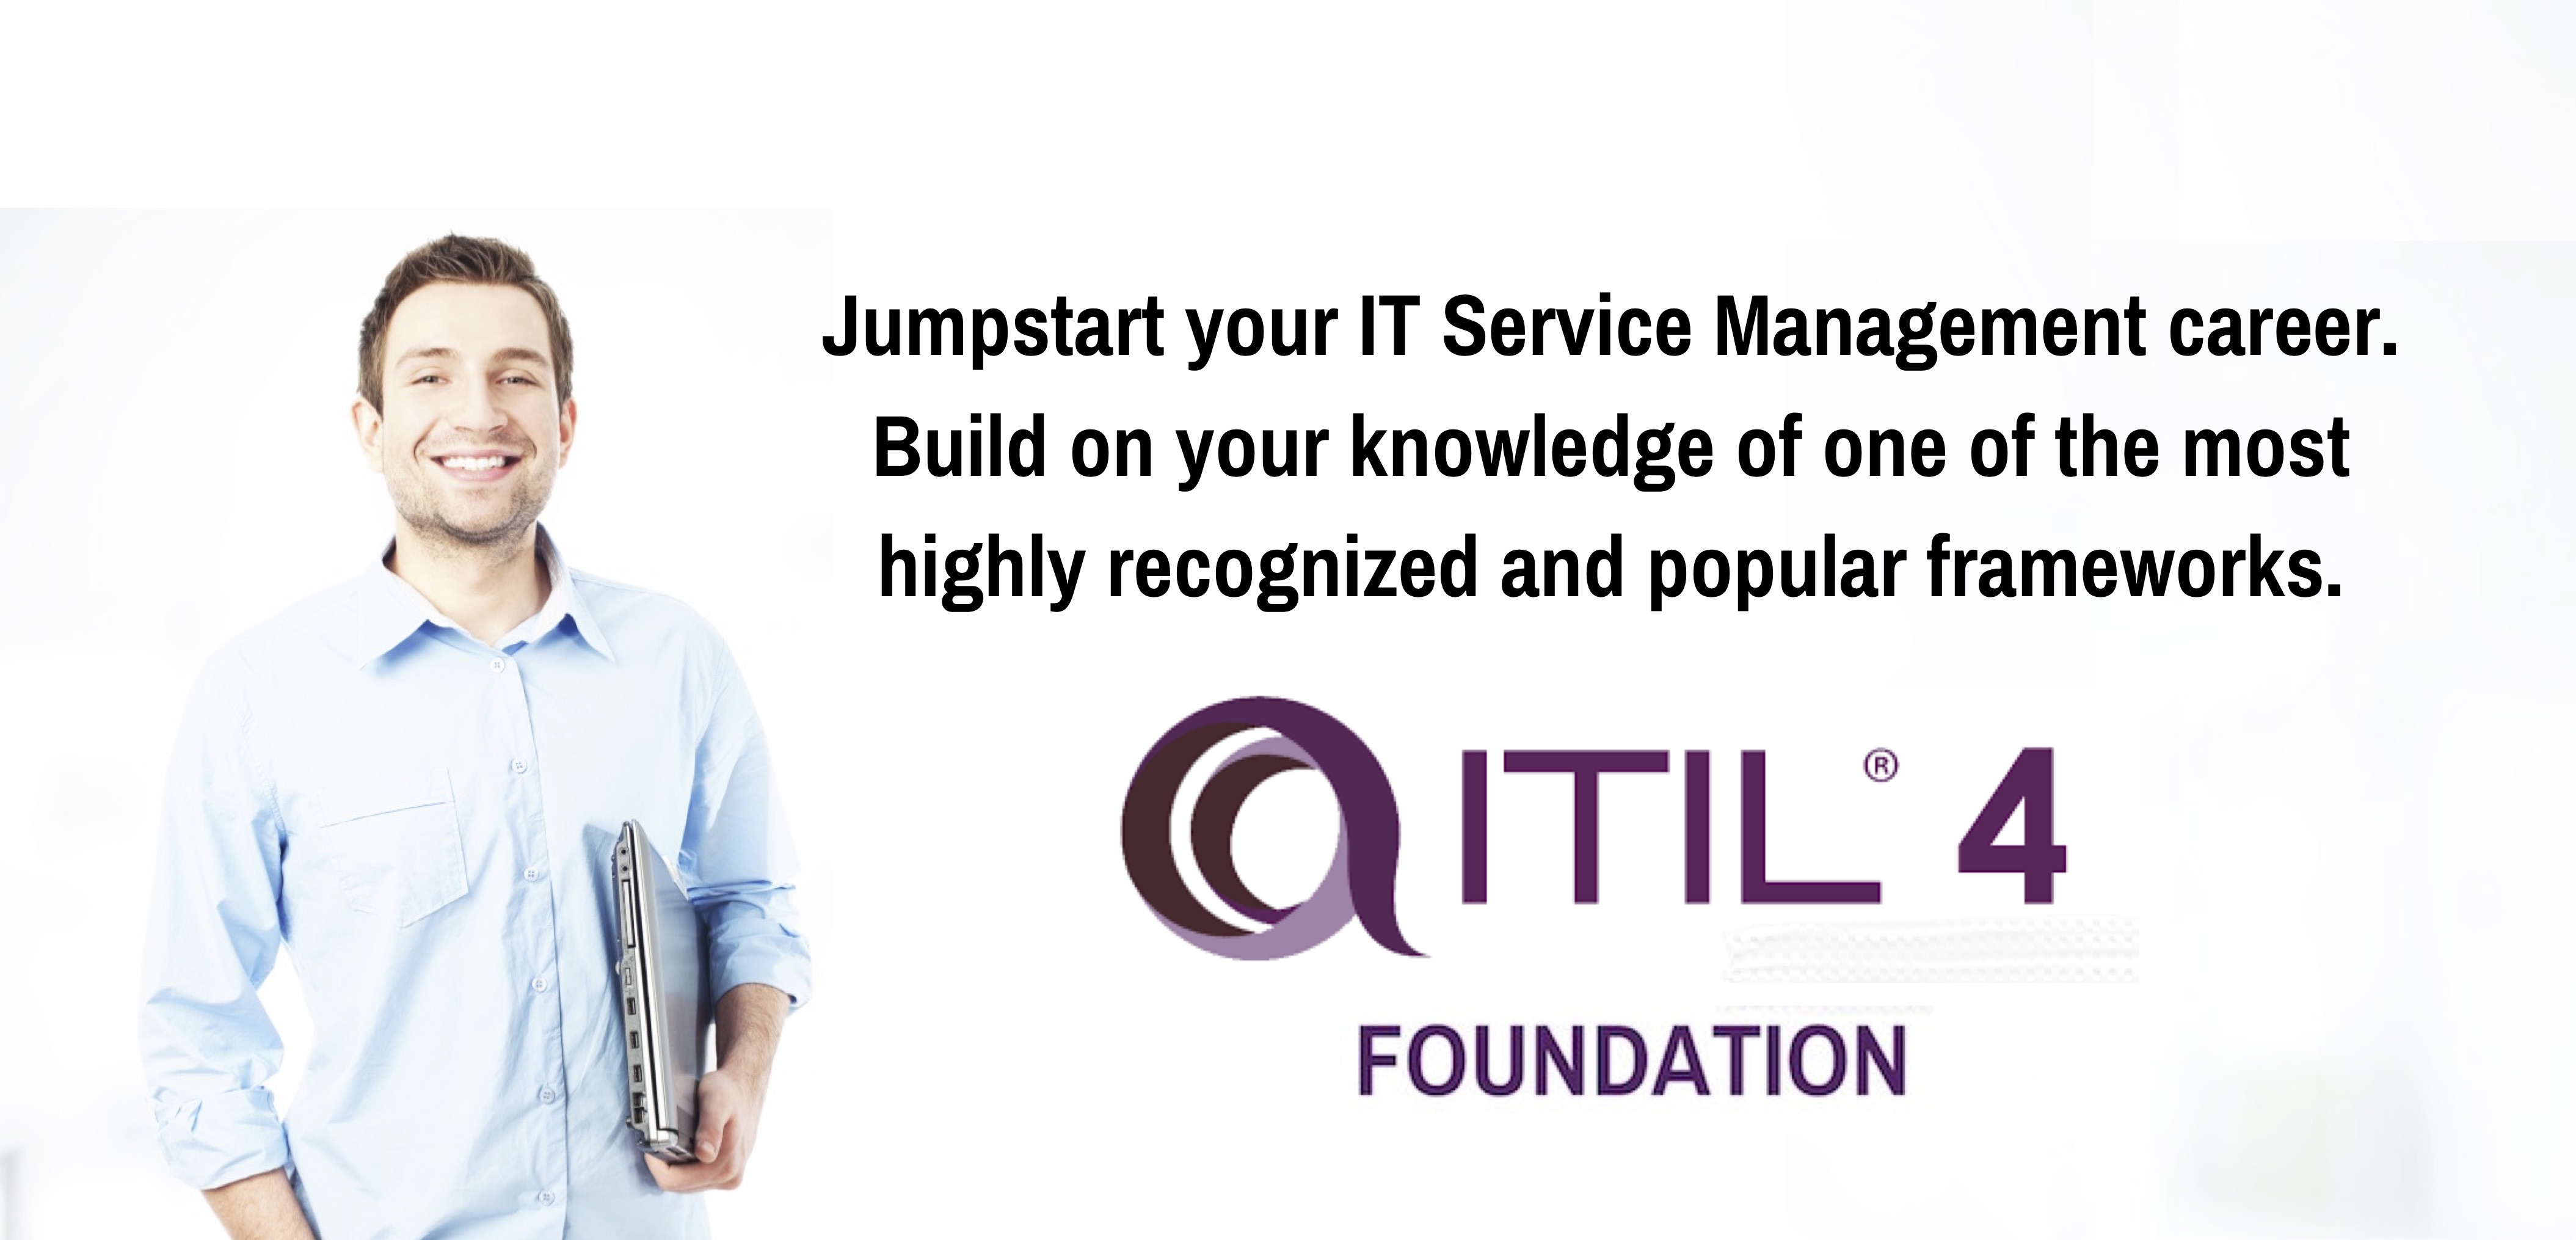 ITIL-4-Foundation Prüfung